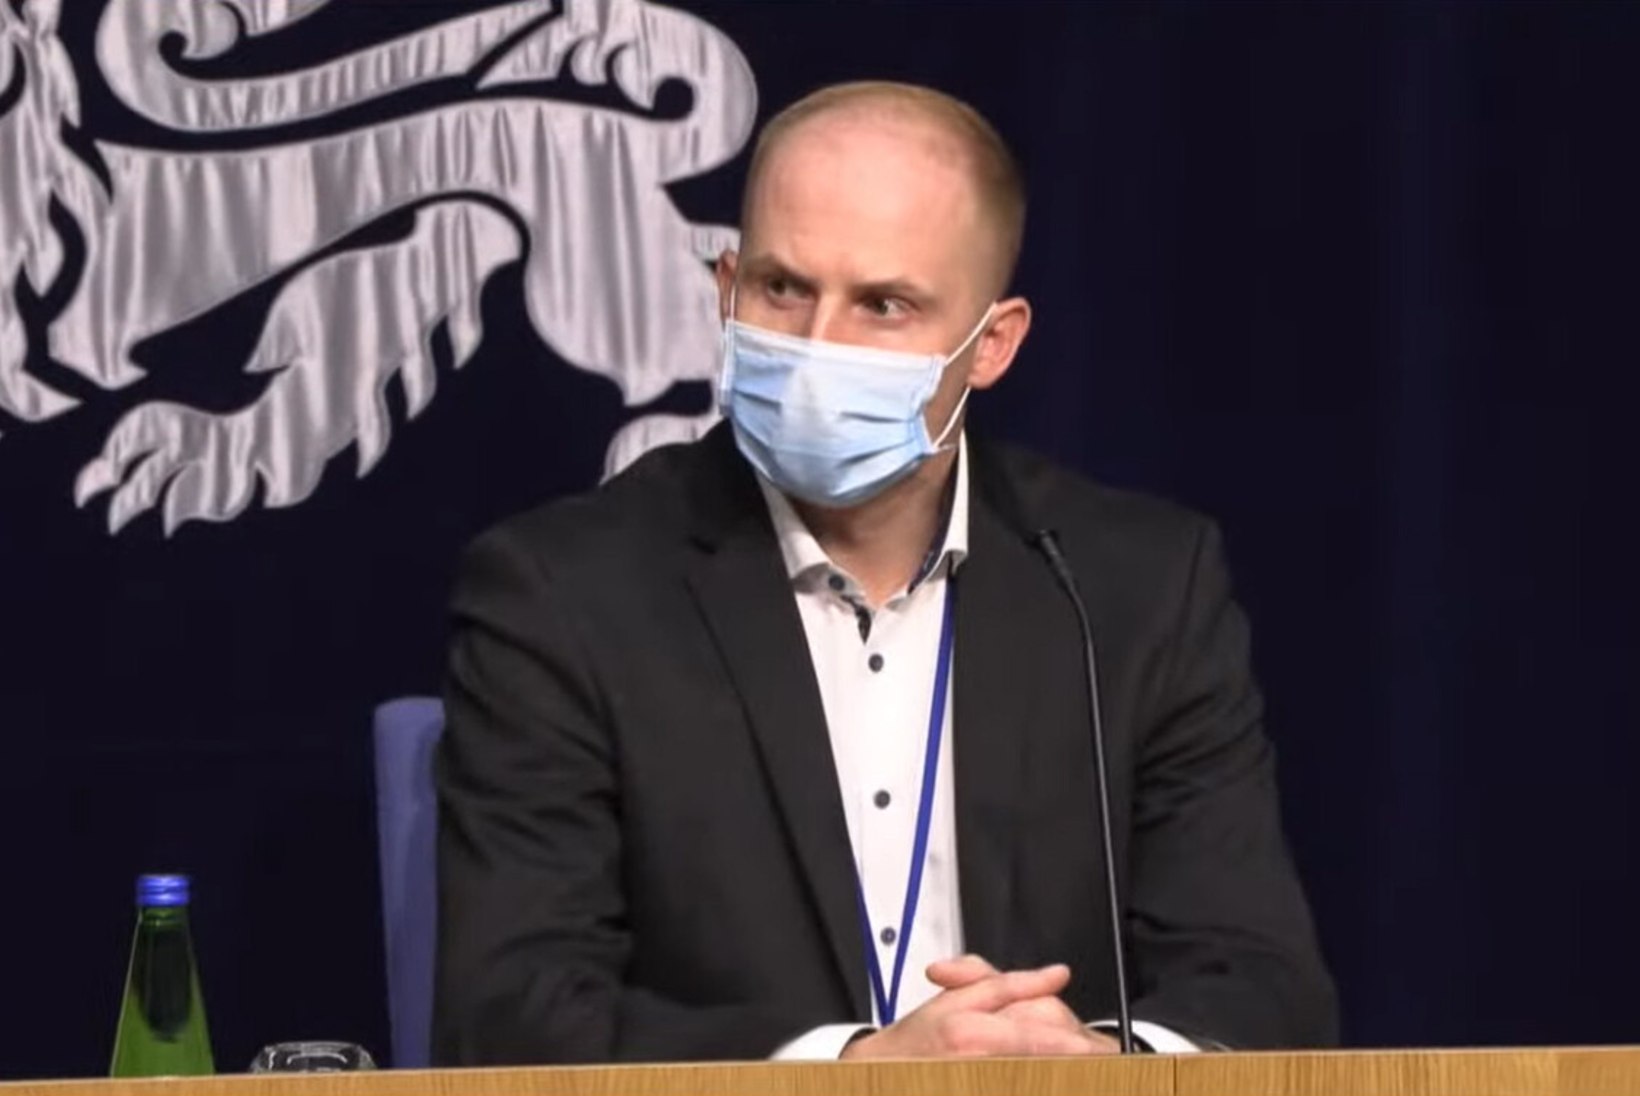 VIDEO | Terviseamet: 29. oktoobrist tuleb kõikides meelelahutusasutustes kanda maski, piirangute eirajaid karistatakse